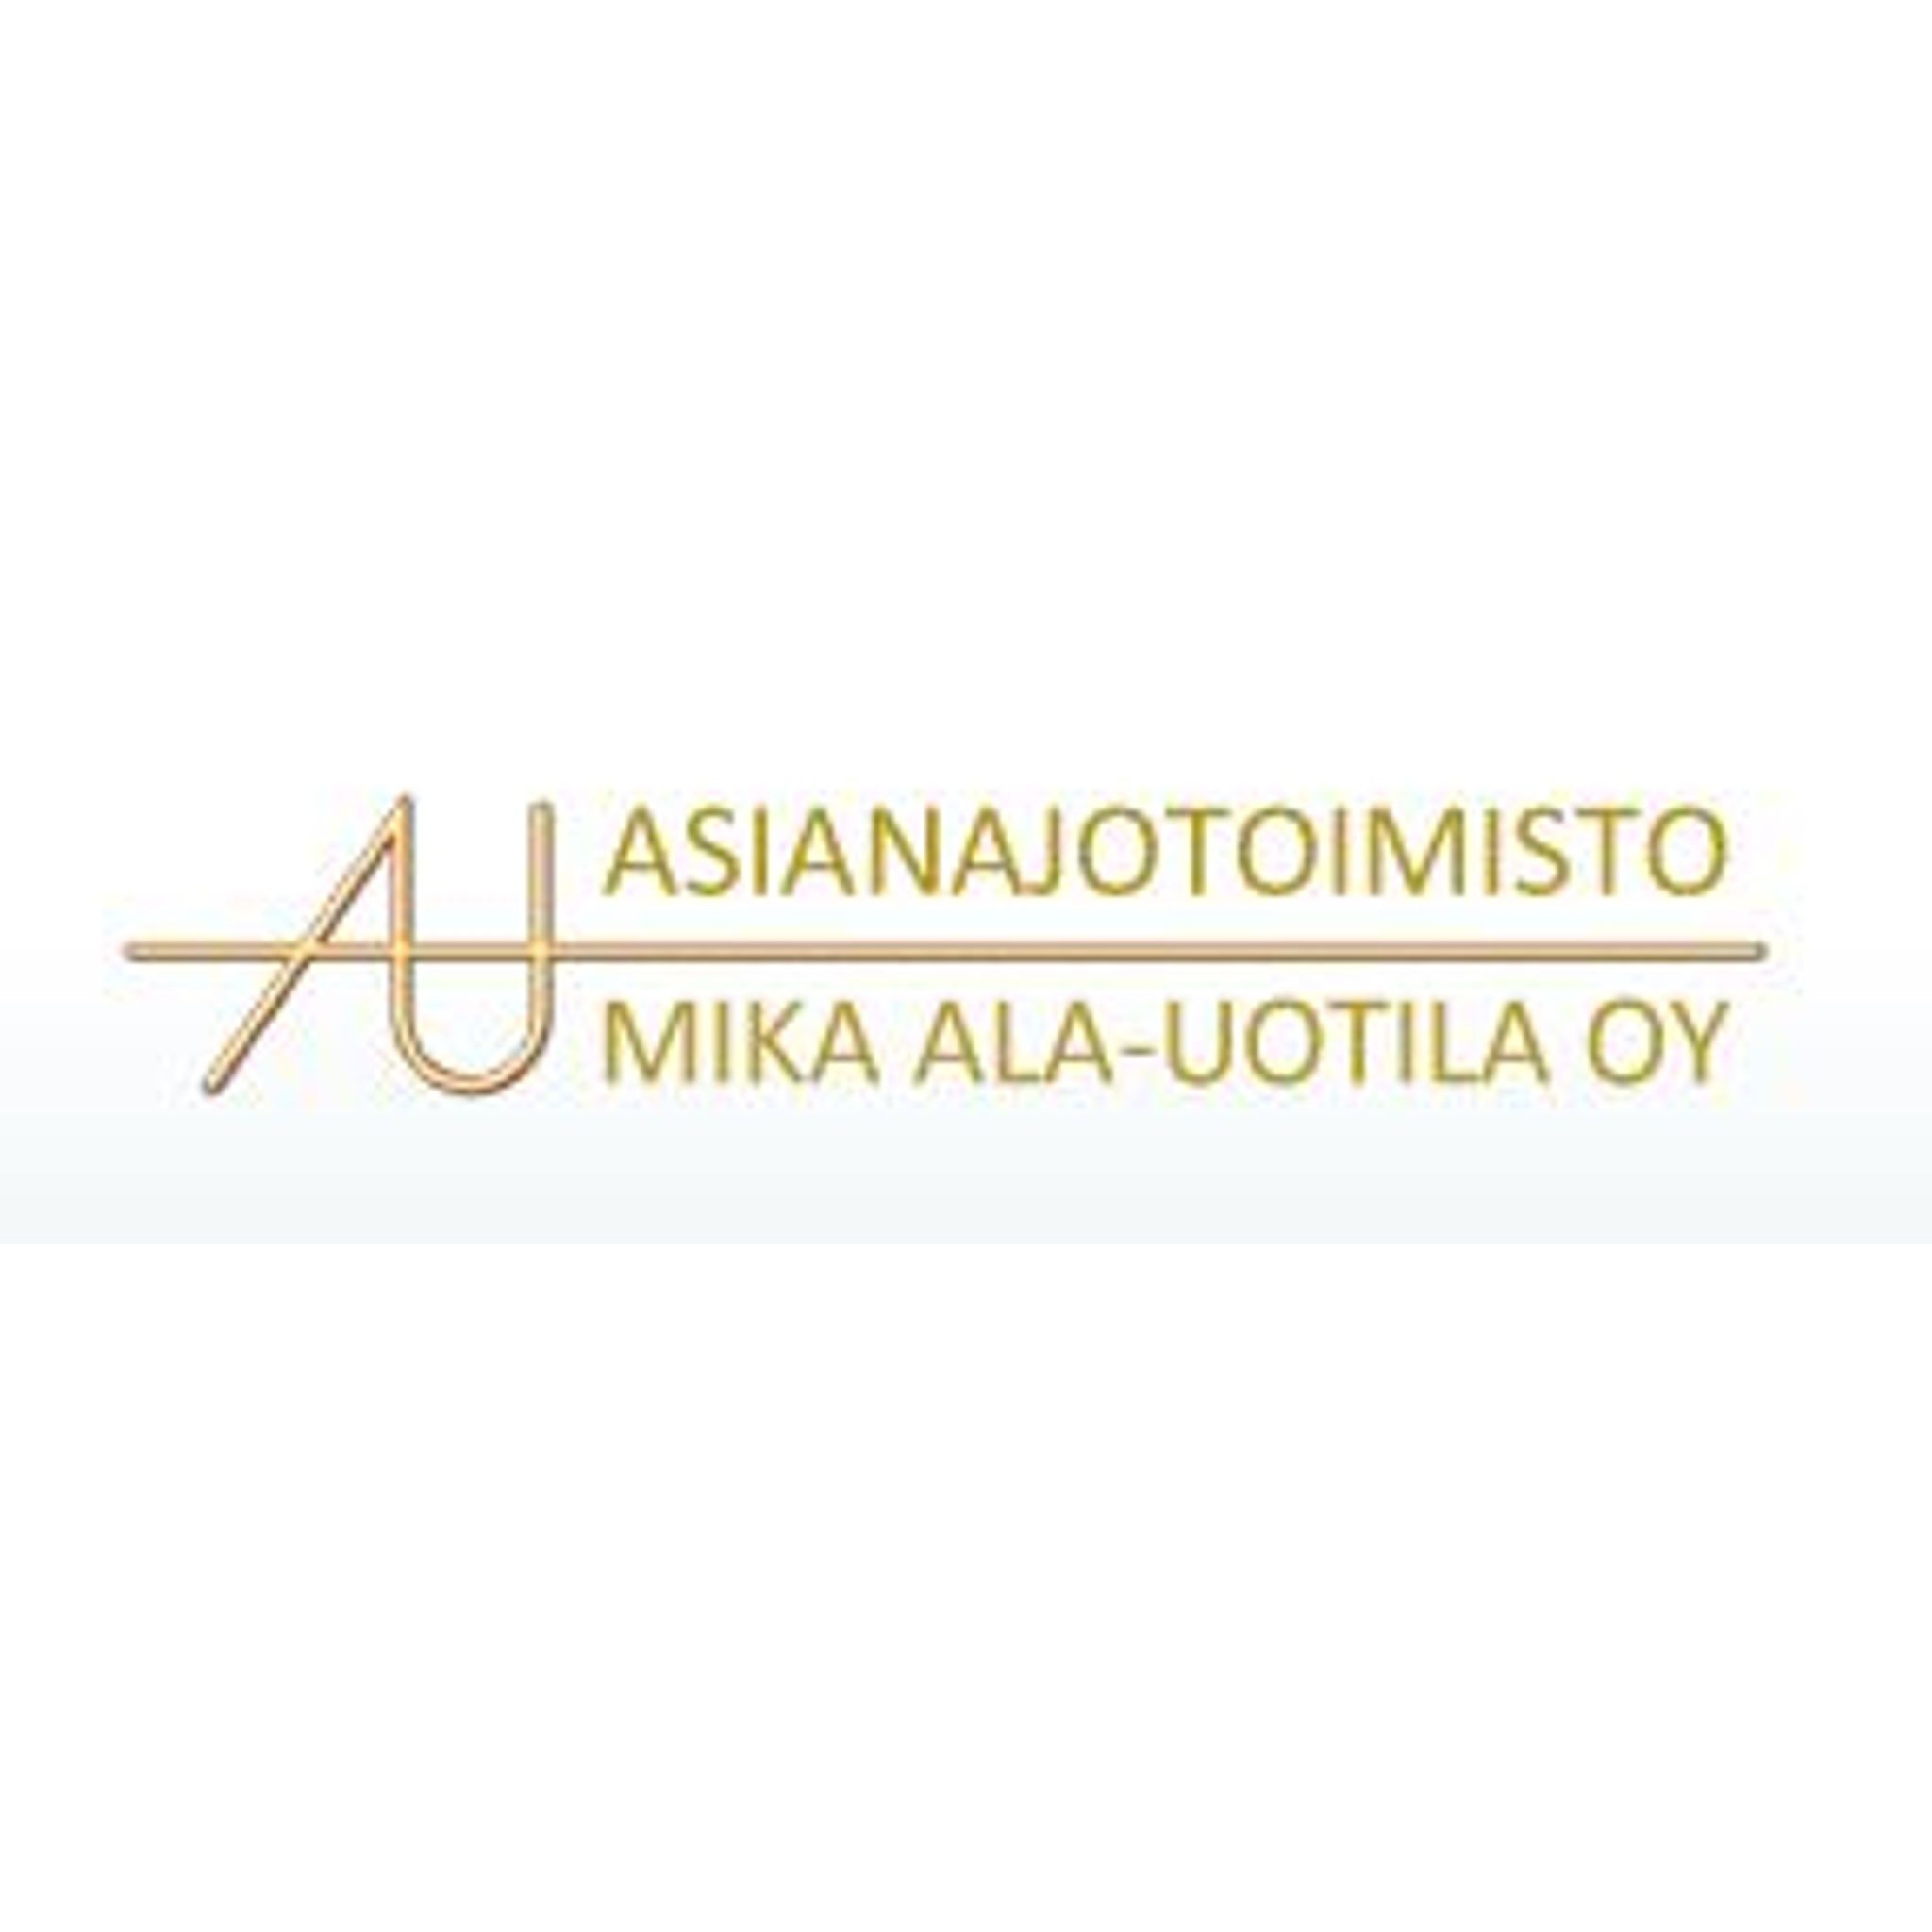 Asianajotoimisto Mika Ala-Uotila Oy Logo